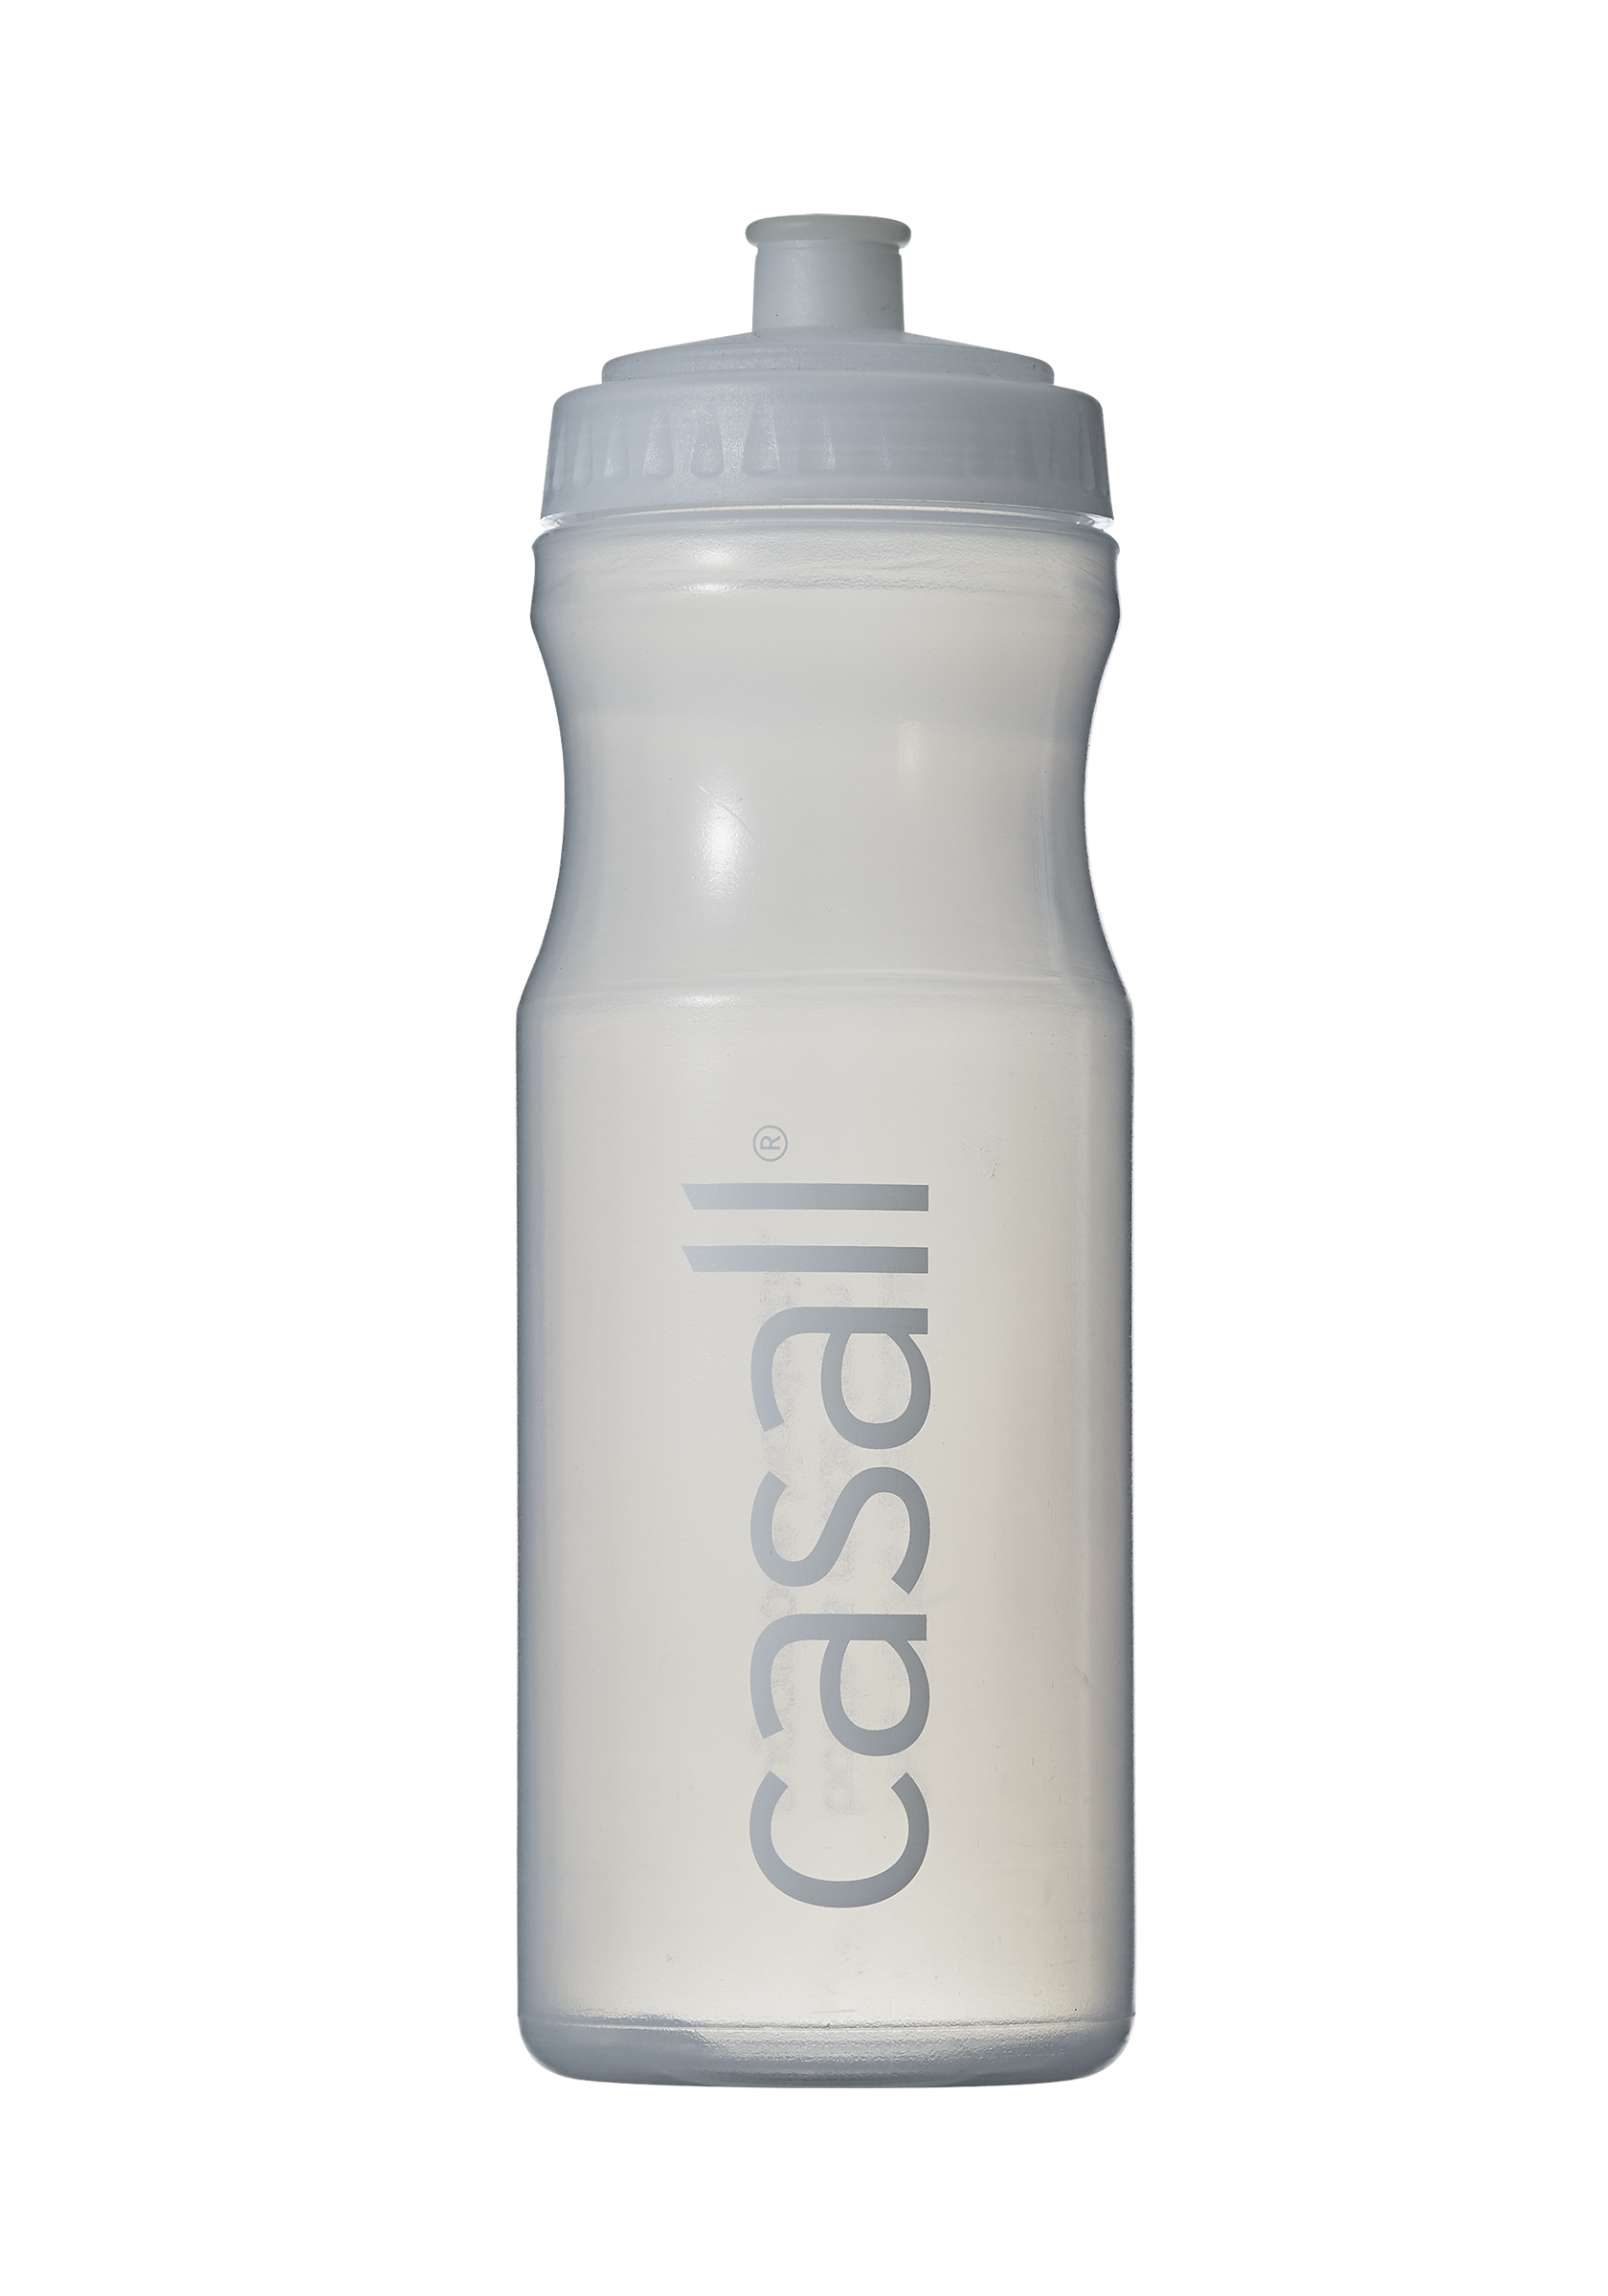 ECO Fitness bottle 0,7L - White